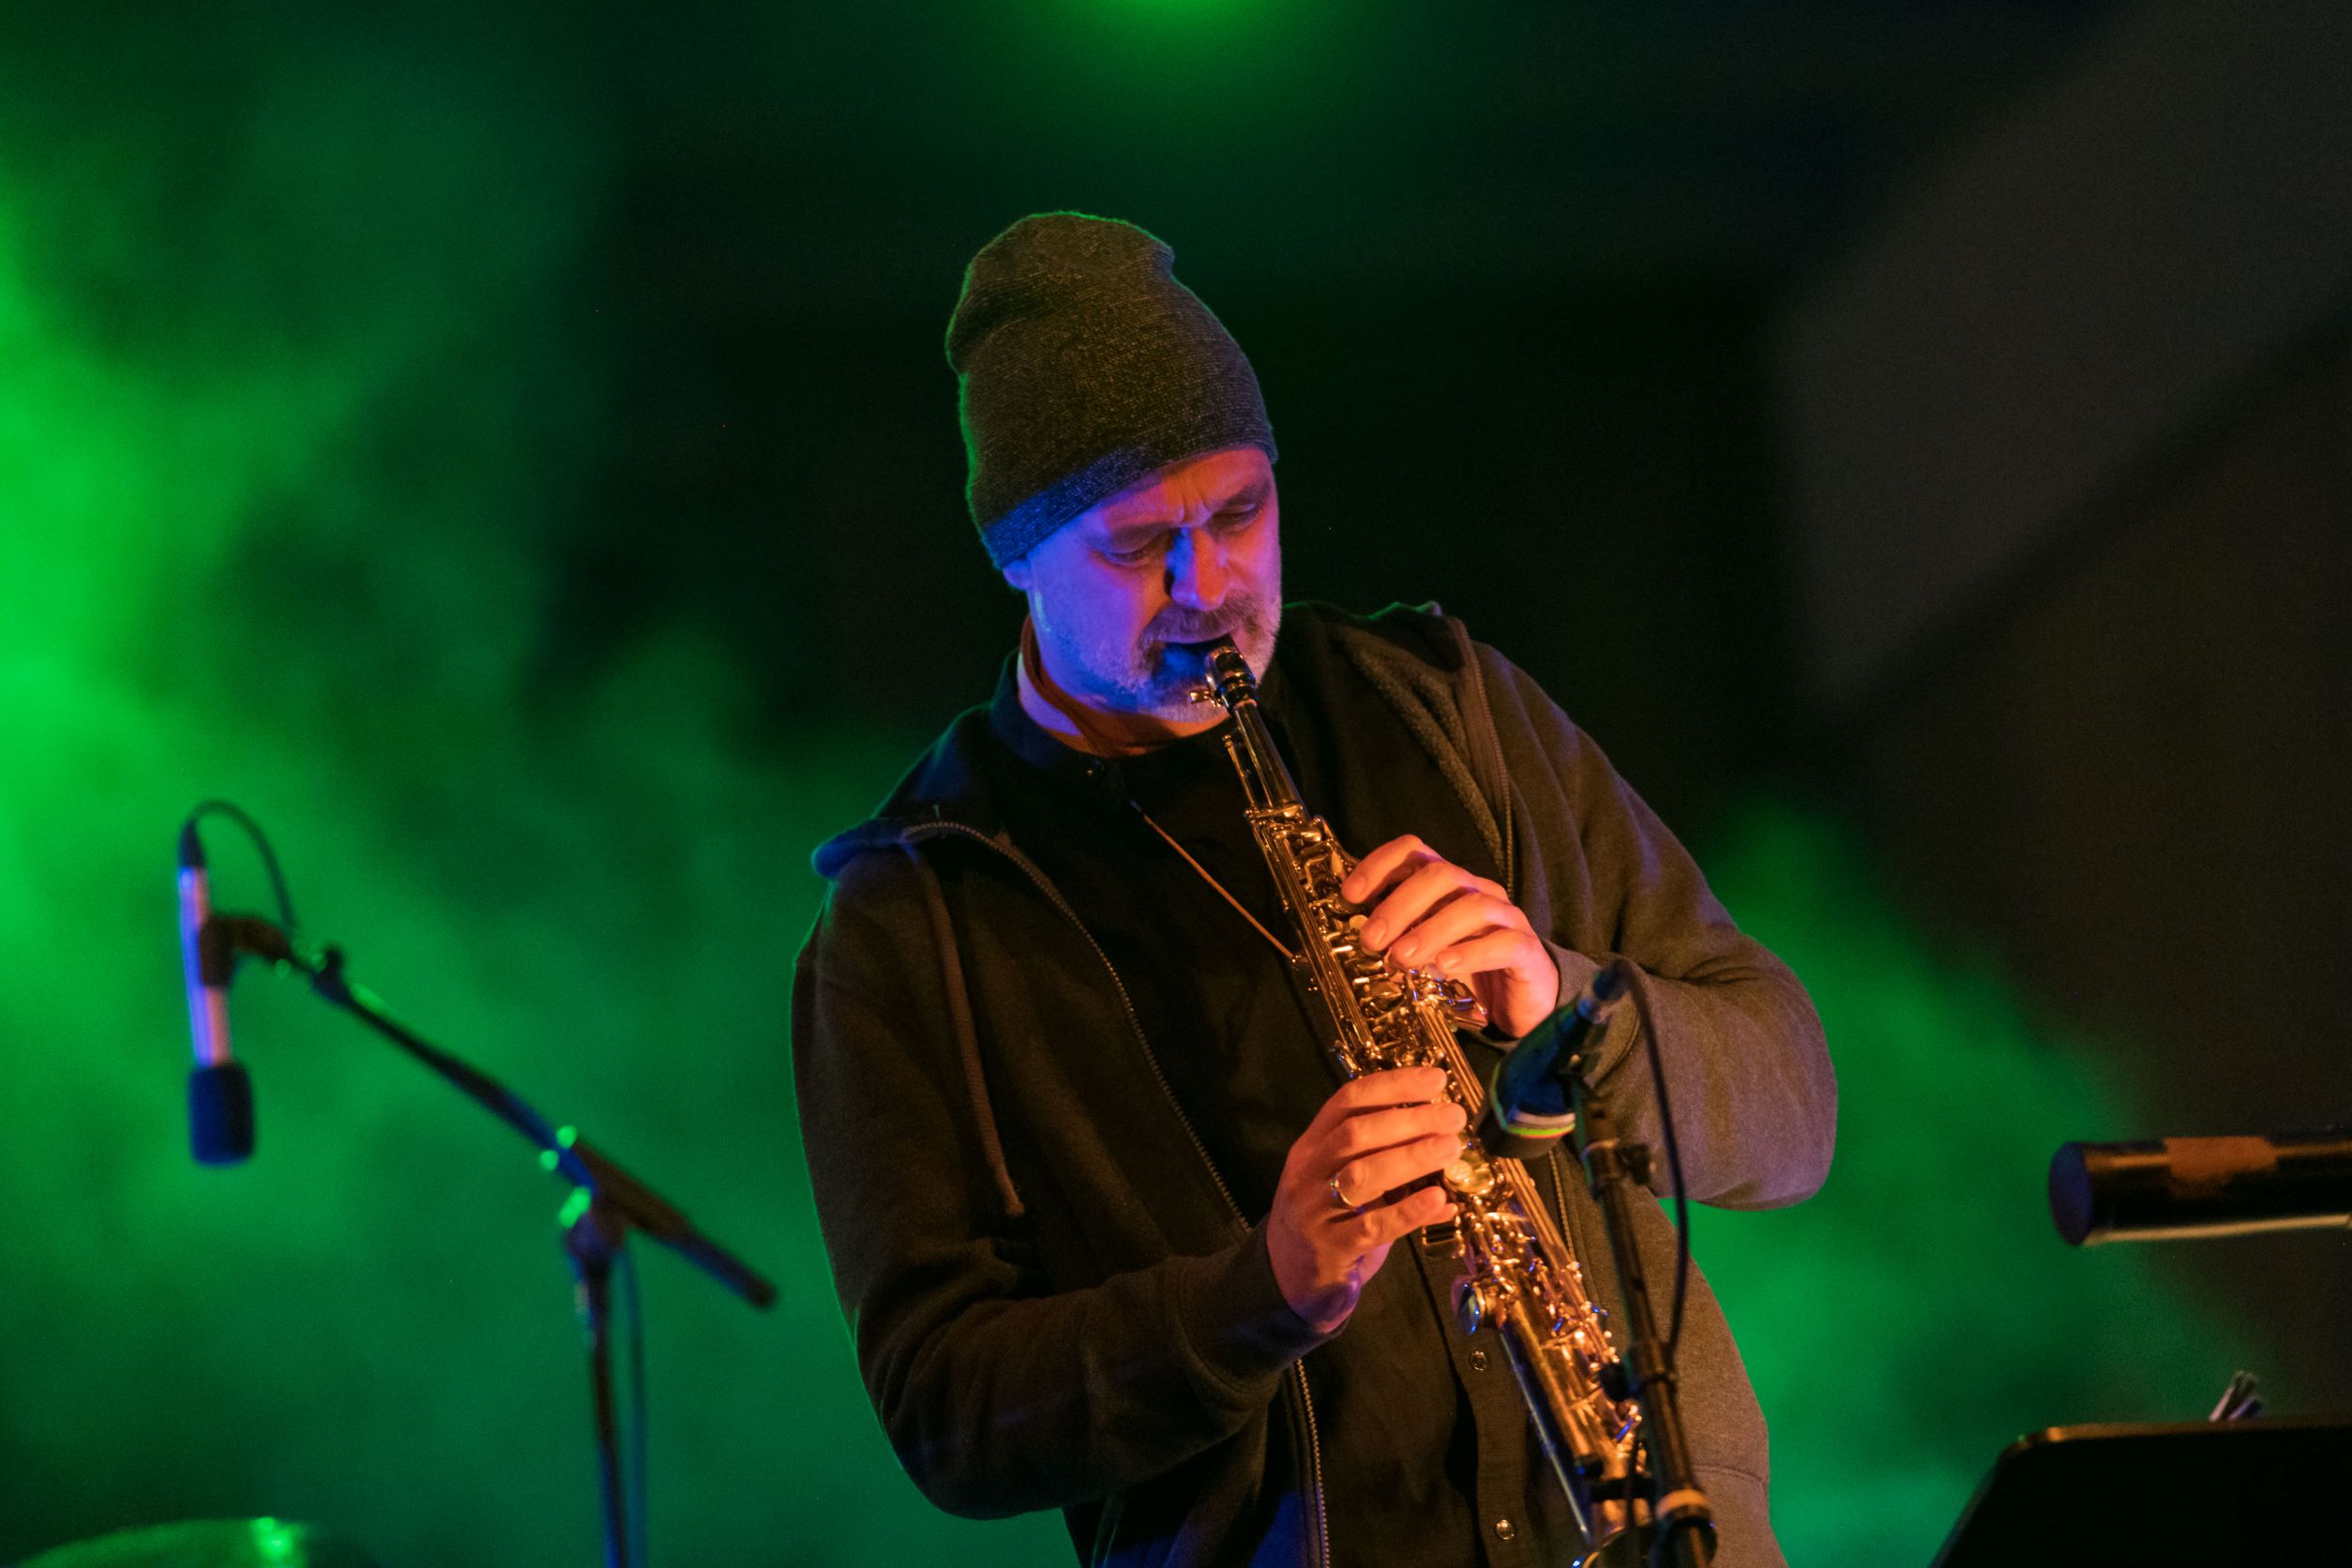 Jazzmusiker Michael Erian bei einem winterlichen Auftritt vor grünem Hintergrund